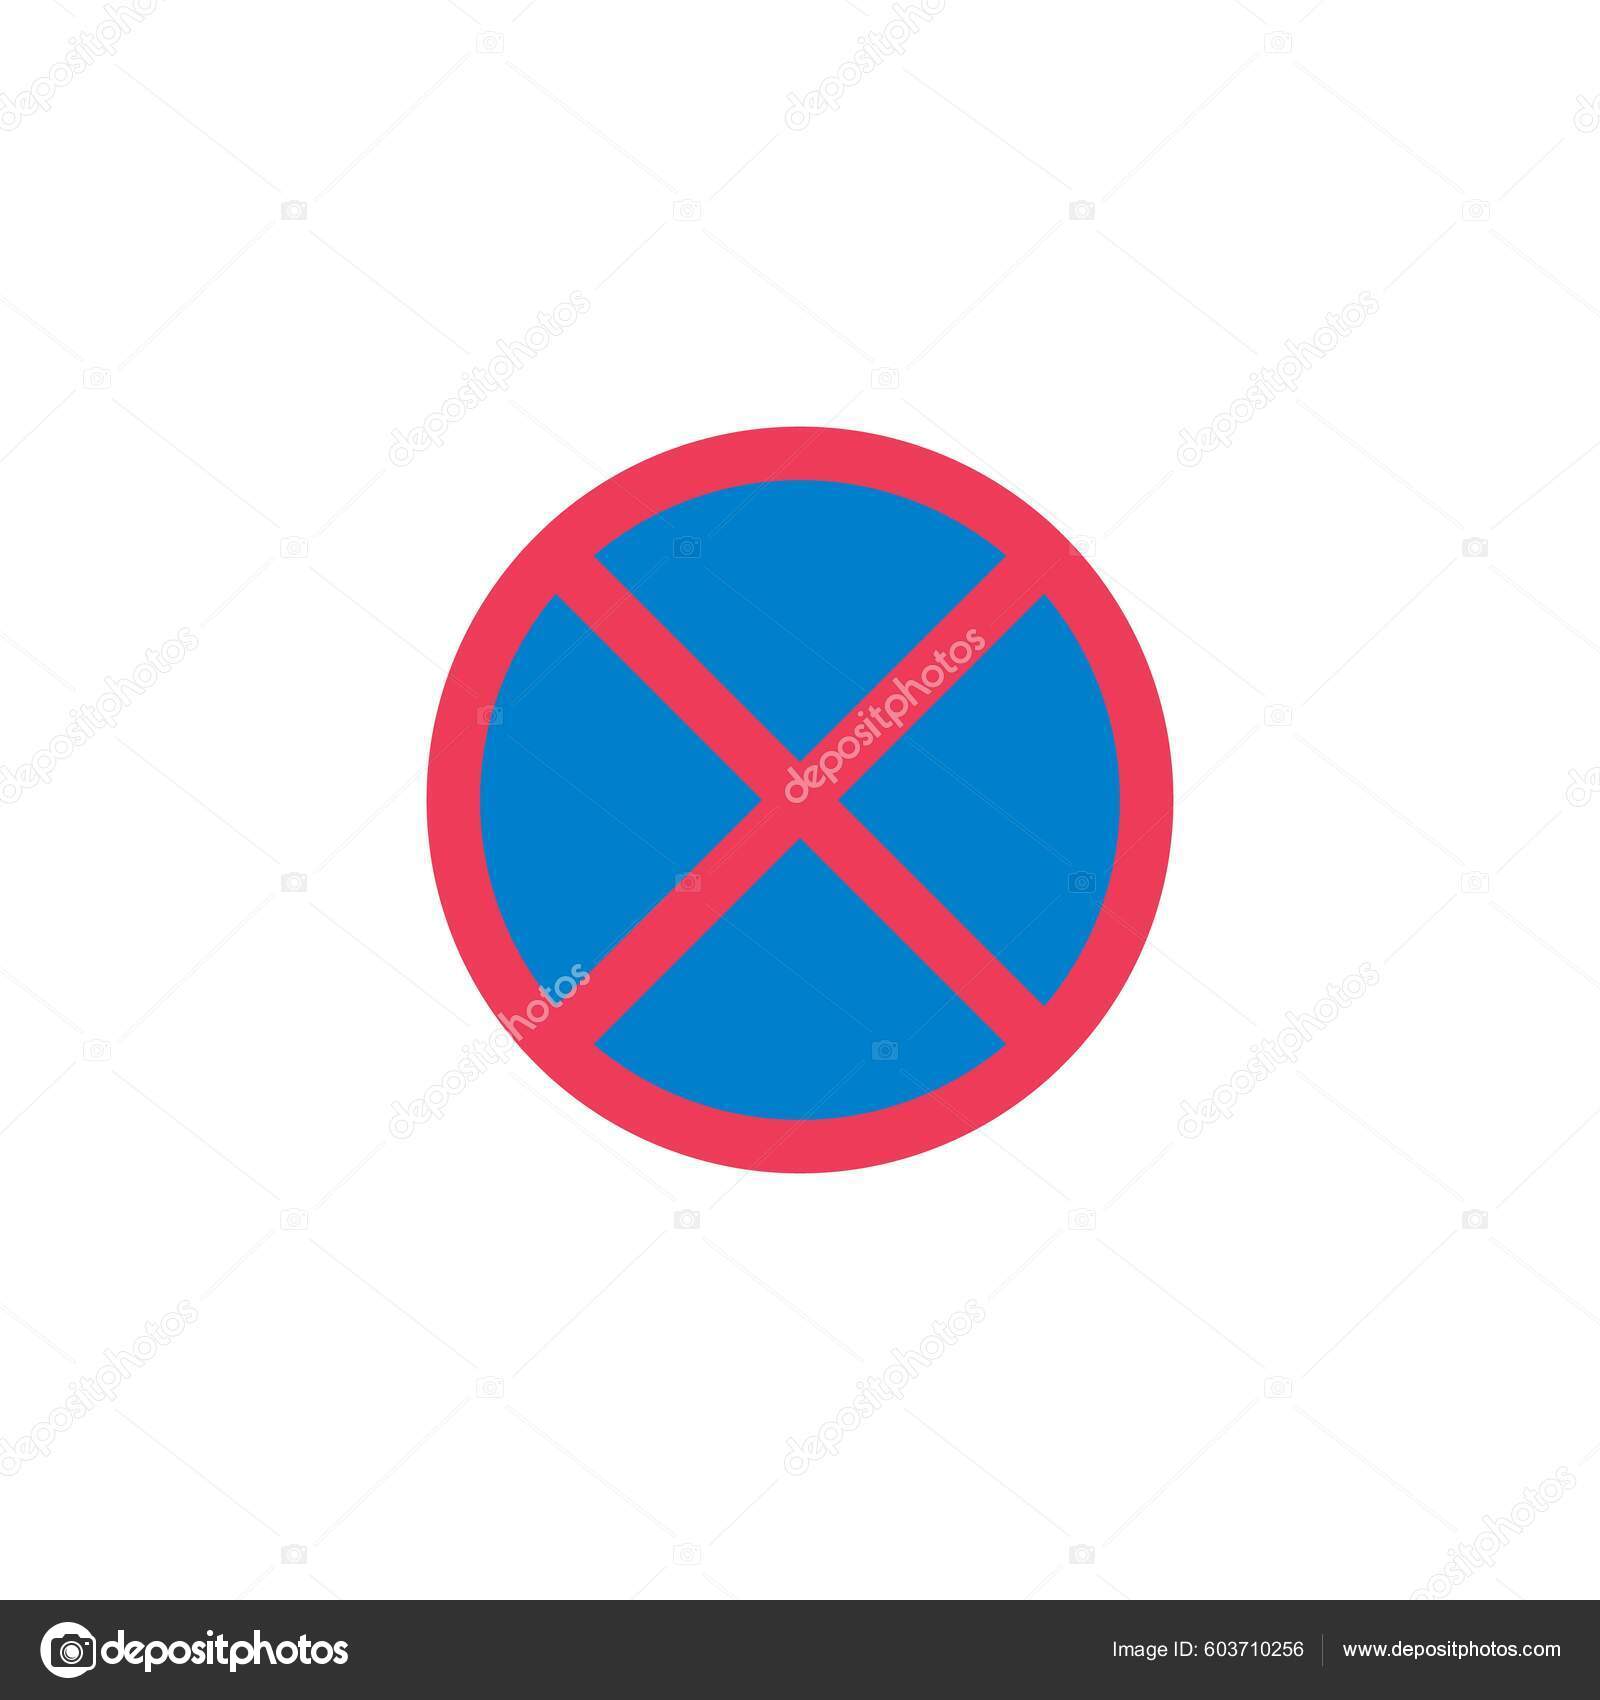 Stoppschild Vektorgrafiken und Vektor-Icons zum kostenlosen Download